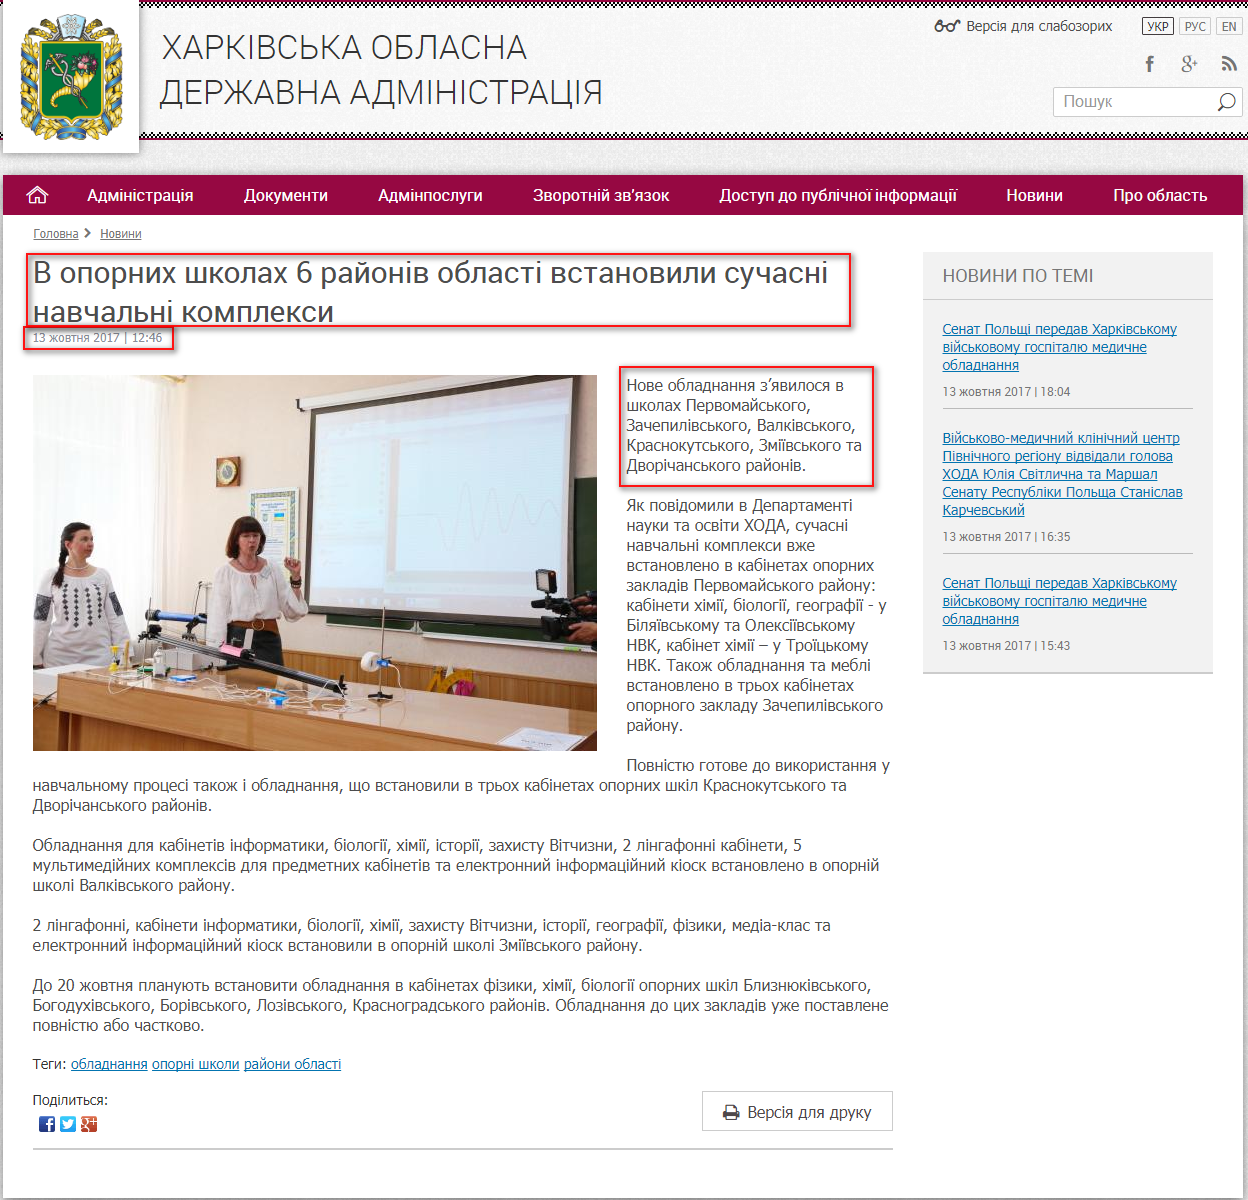 http://kharkivoda.gov.ua/news/89030